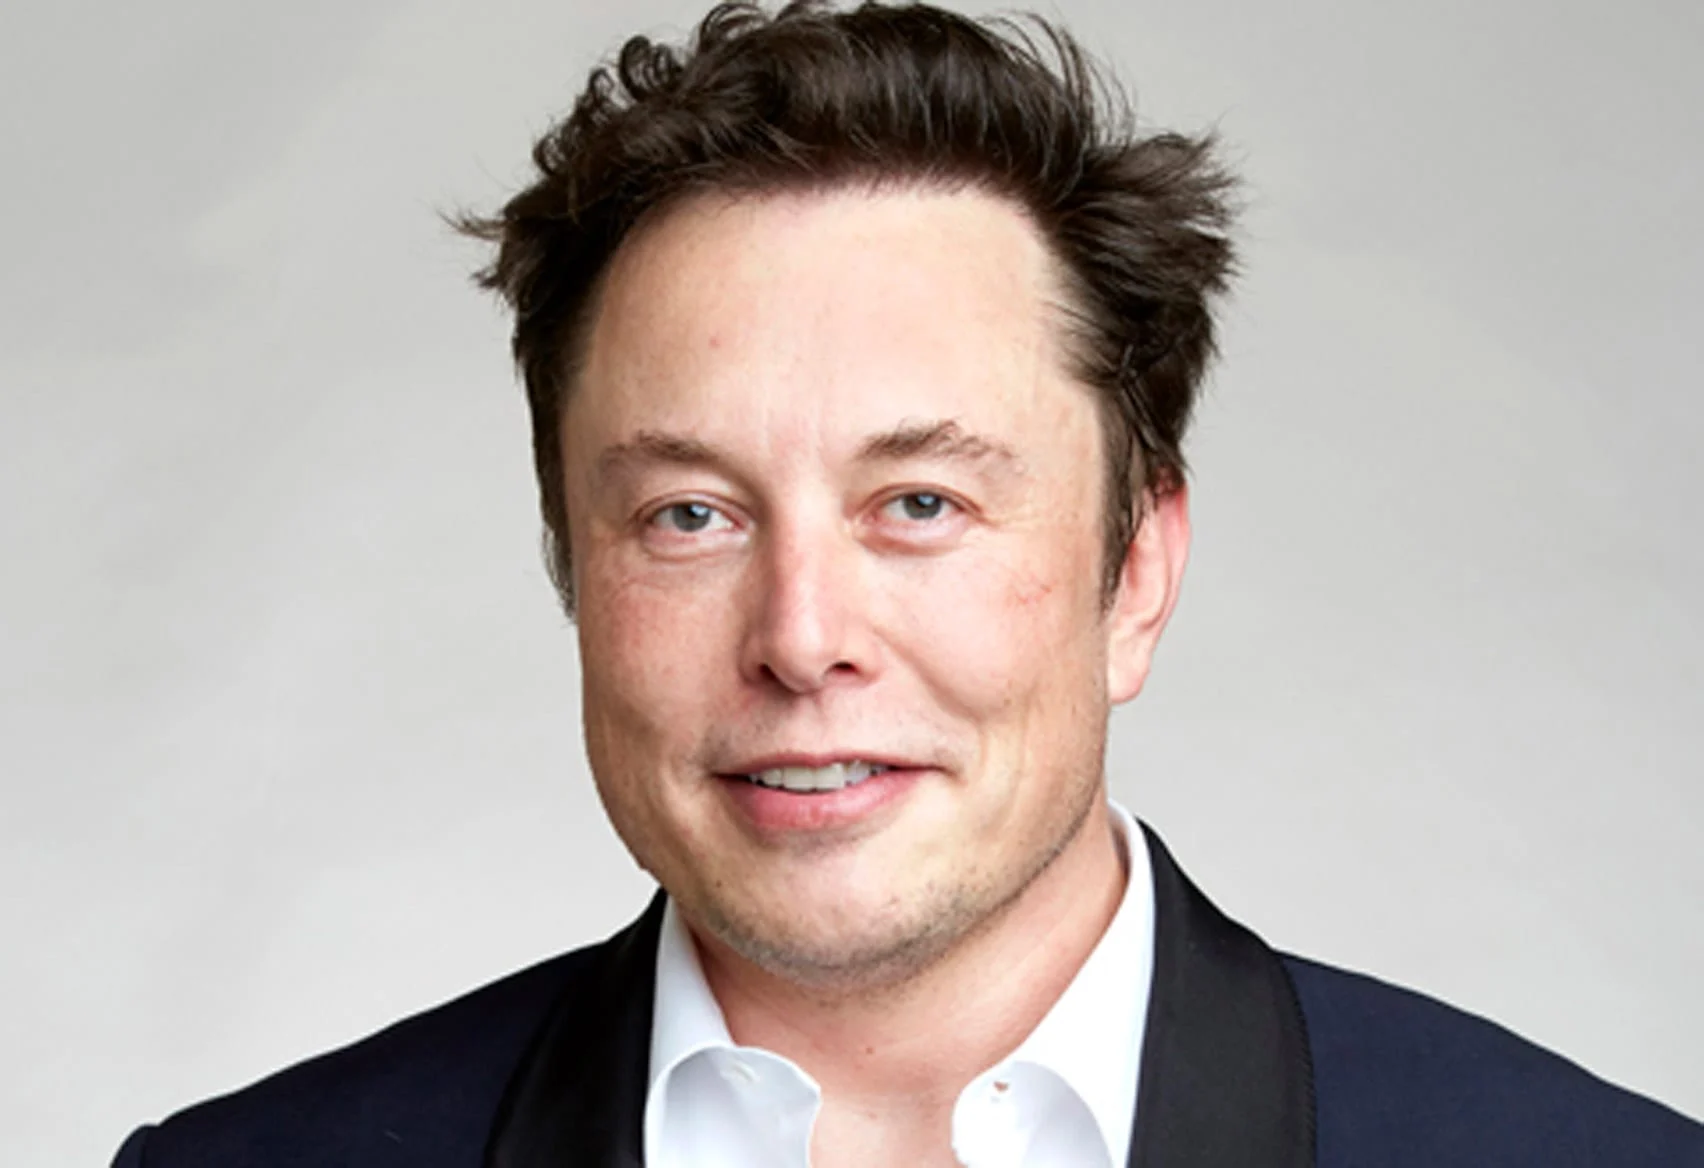  Elon Musk i ofrohen miliona për të luajtur në një filmin pornografik 